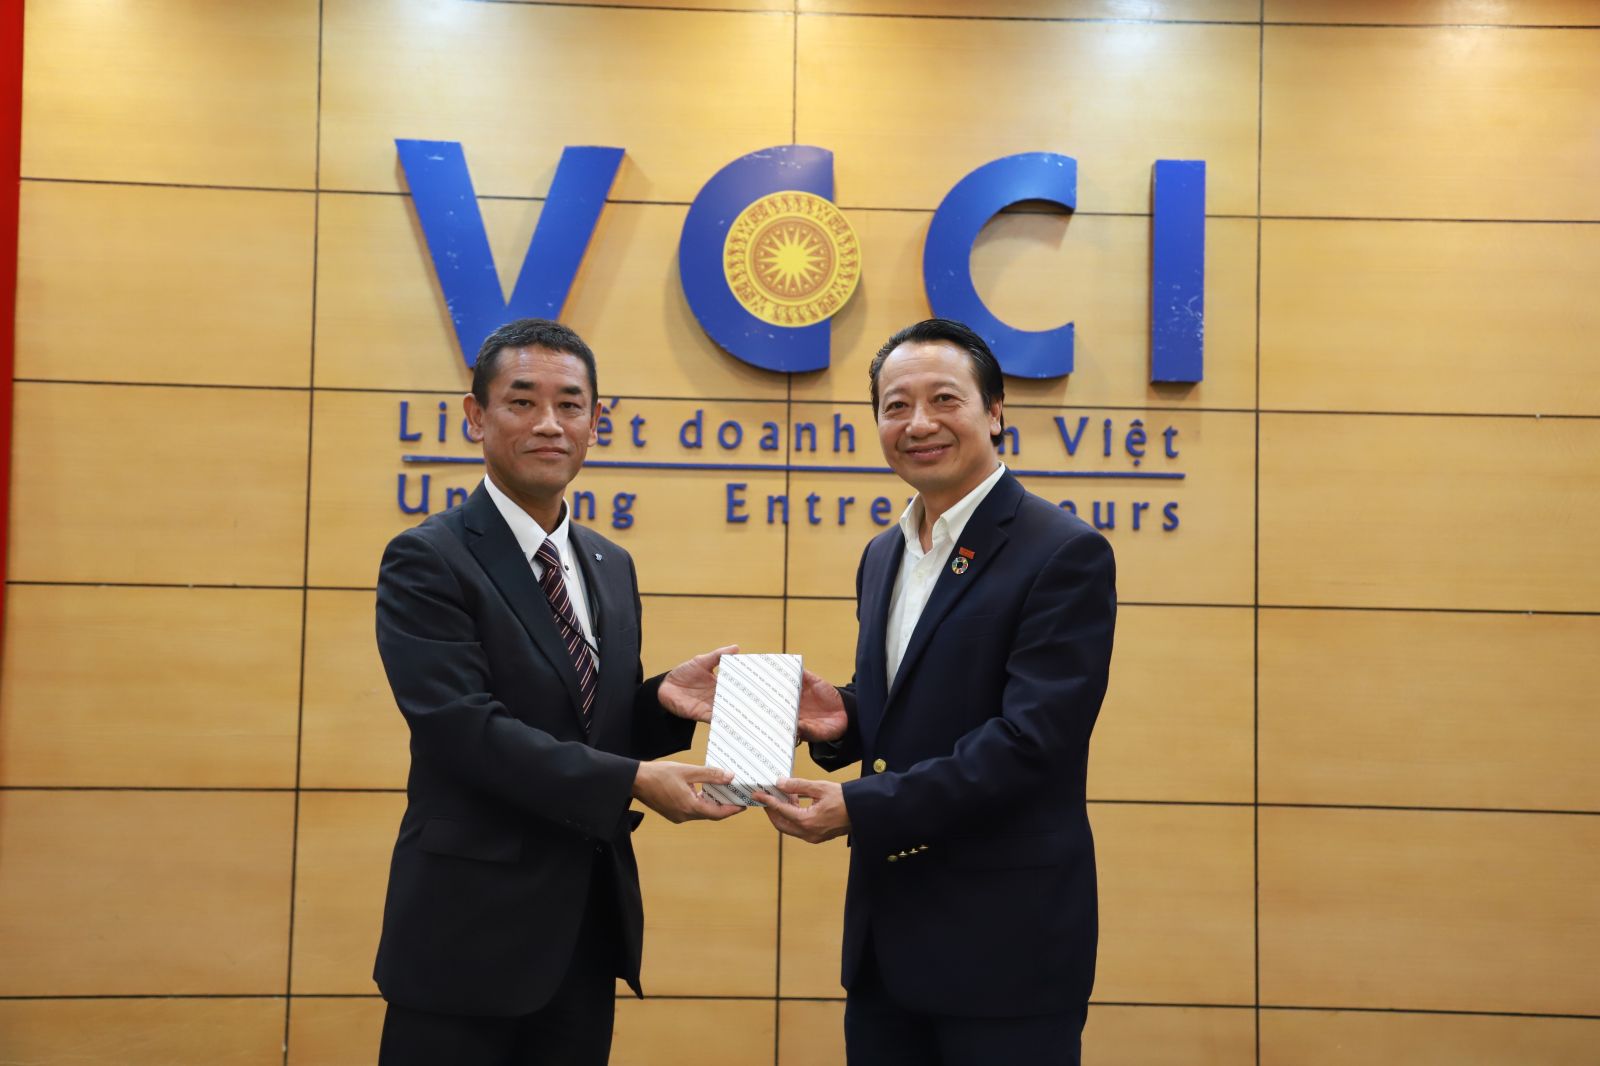 VCCI kỳ vọng sẽ tiếp tục đóng góp vào sự phát triển của quan hệ Việt Nam - Nhật Bản